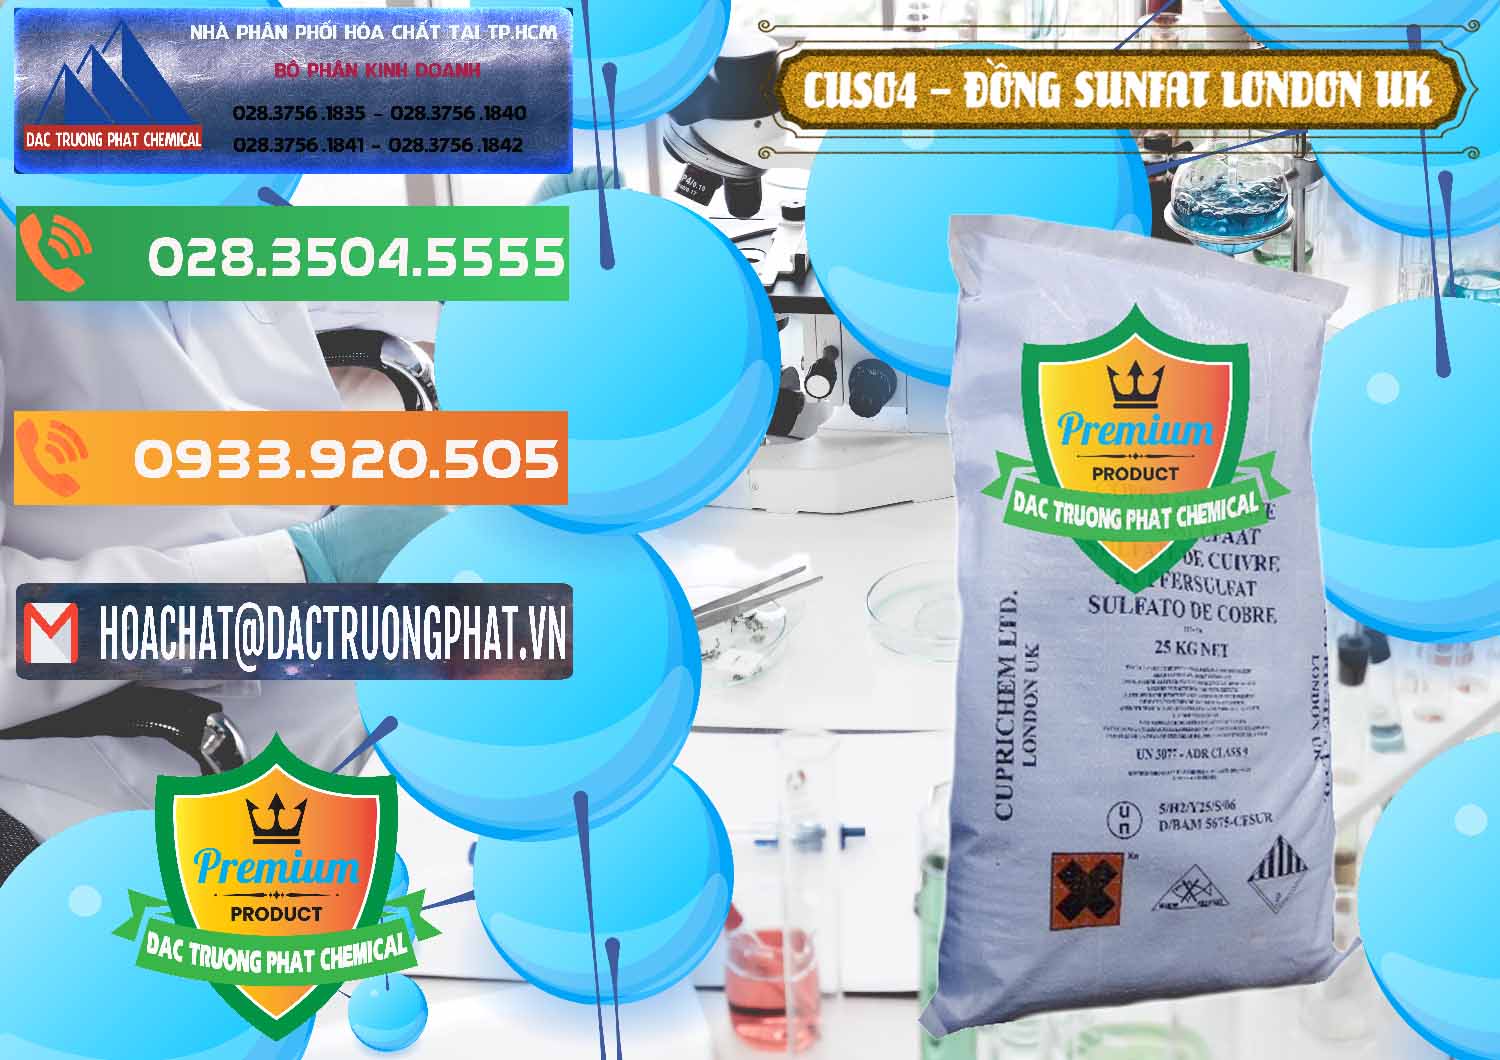 Công ty chuyên nhập khẩu _ bán CuSO4 – Đồng Sunfat Anh Uk Kingdoms - 0478 - Công ty cung cấp _ bán hóa chất tại TP.HCM - hoachatxulynuoc.com.vn